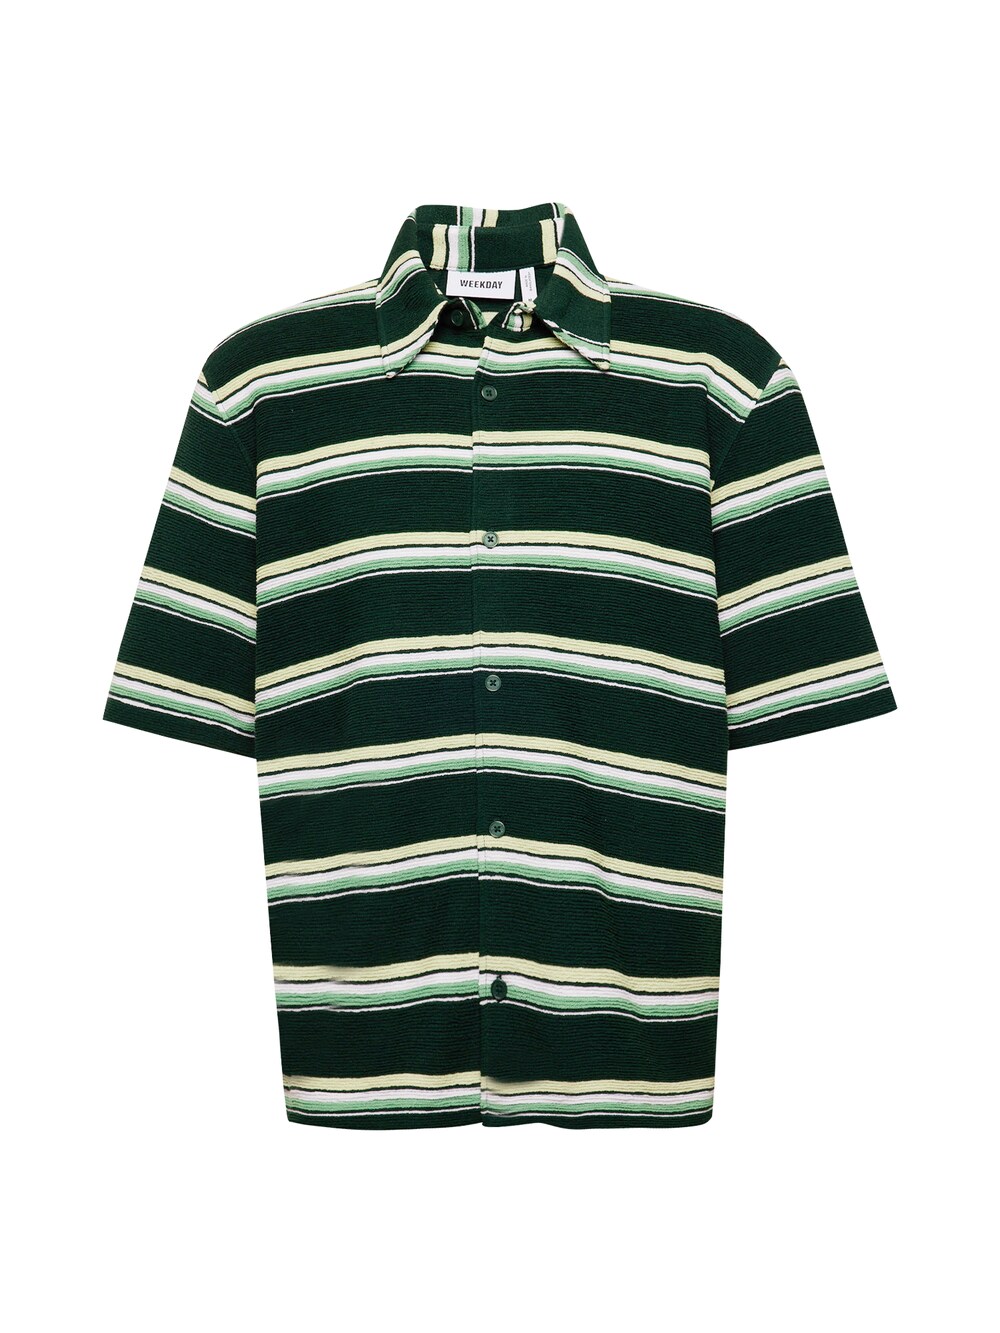 Рубашка на пуговицах стандартного кроя Weekday, зеленый/пастельно-зеленый/светло-зеленый цена и фото